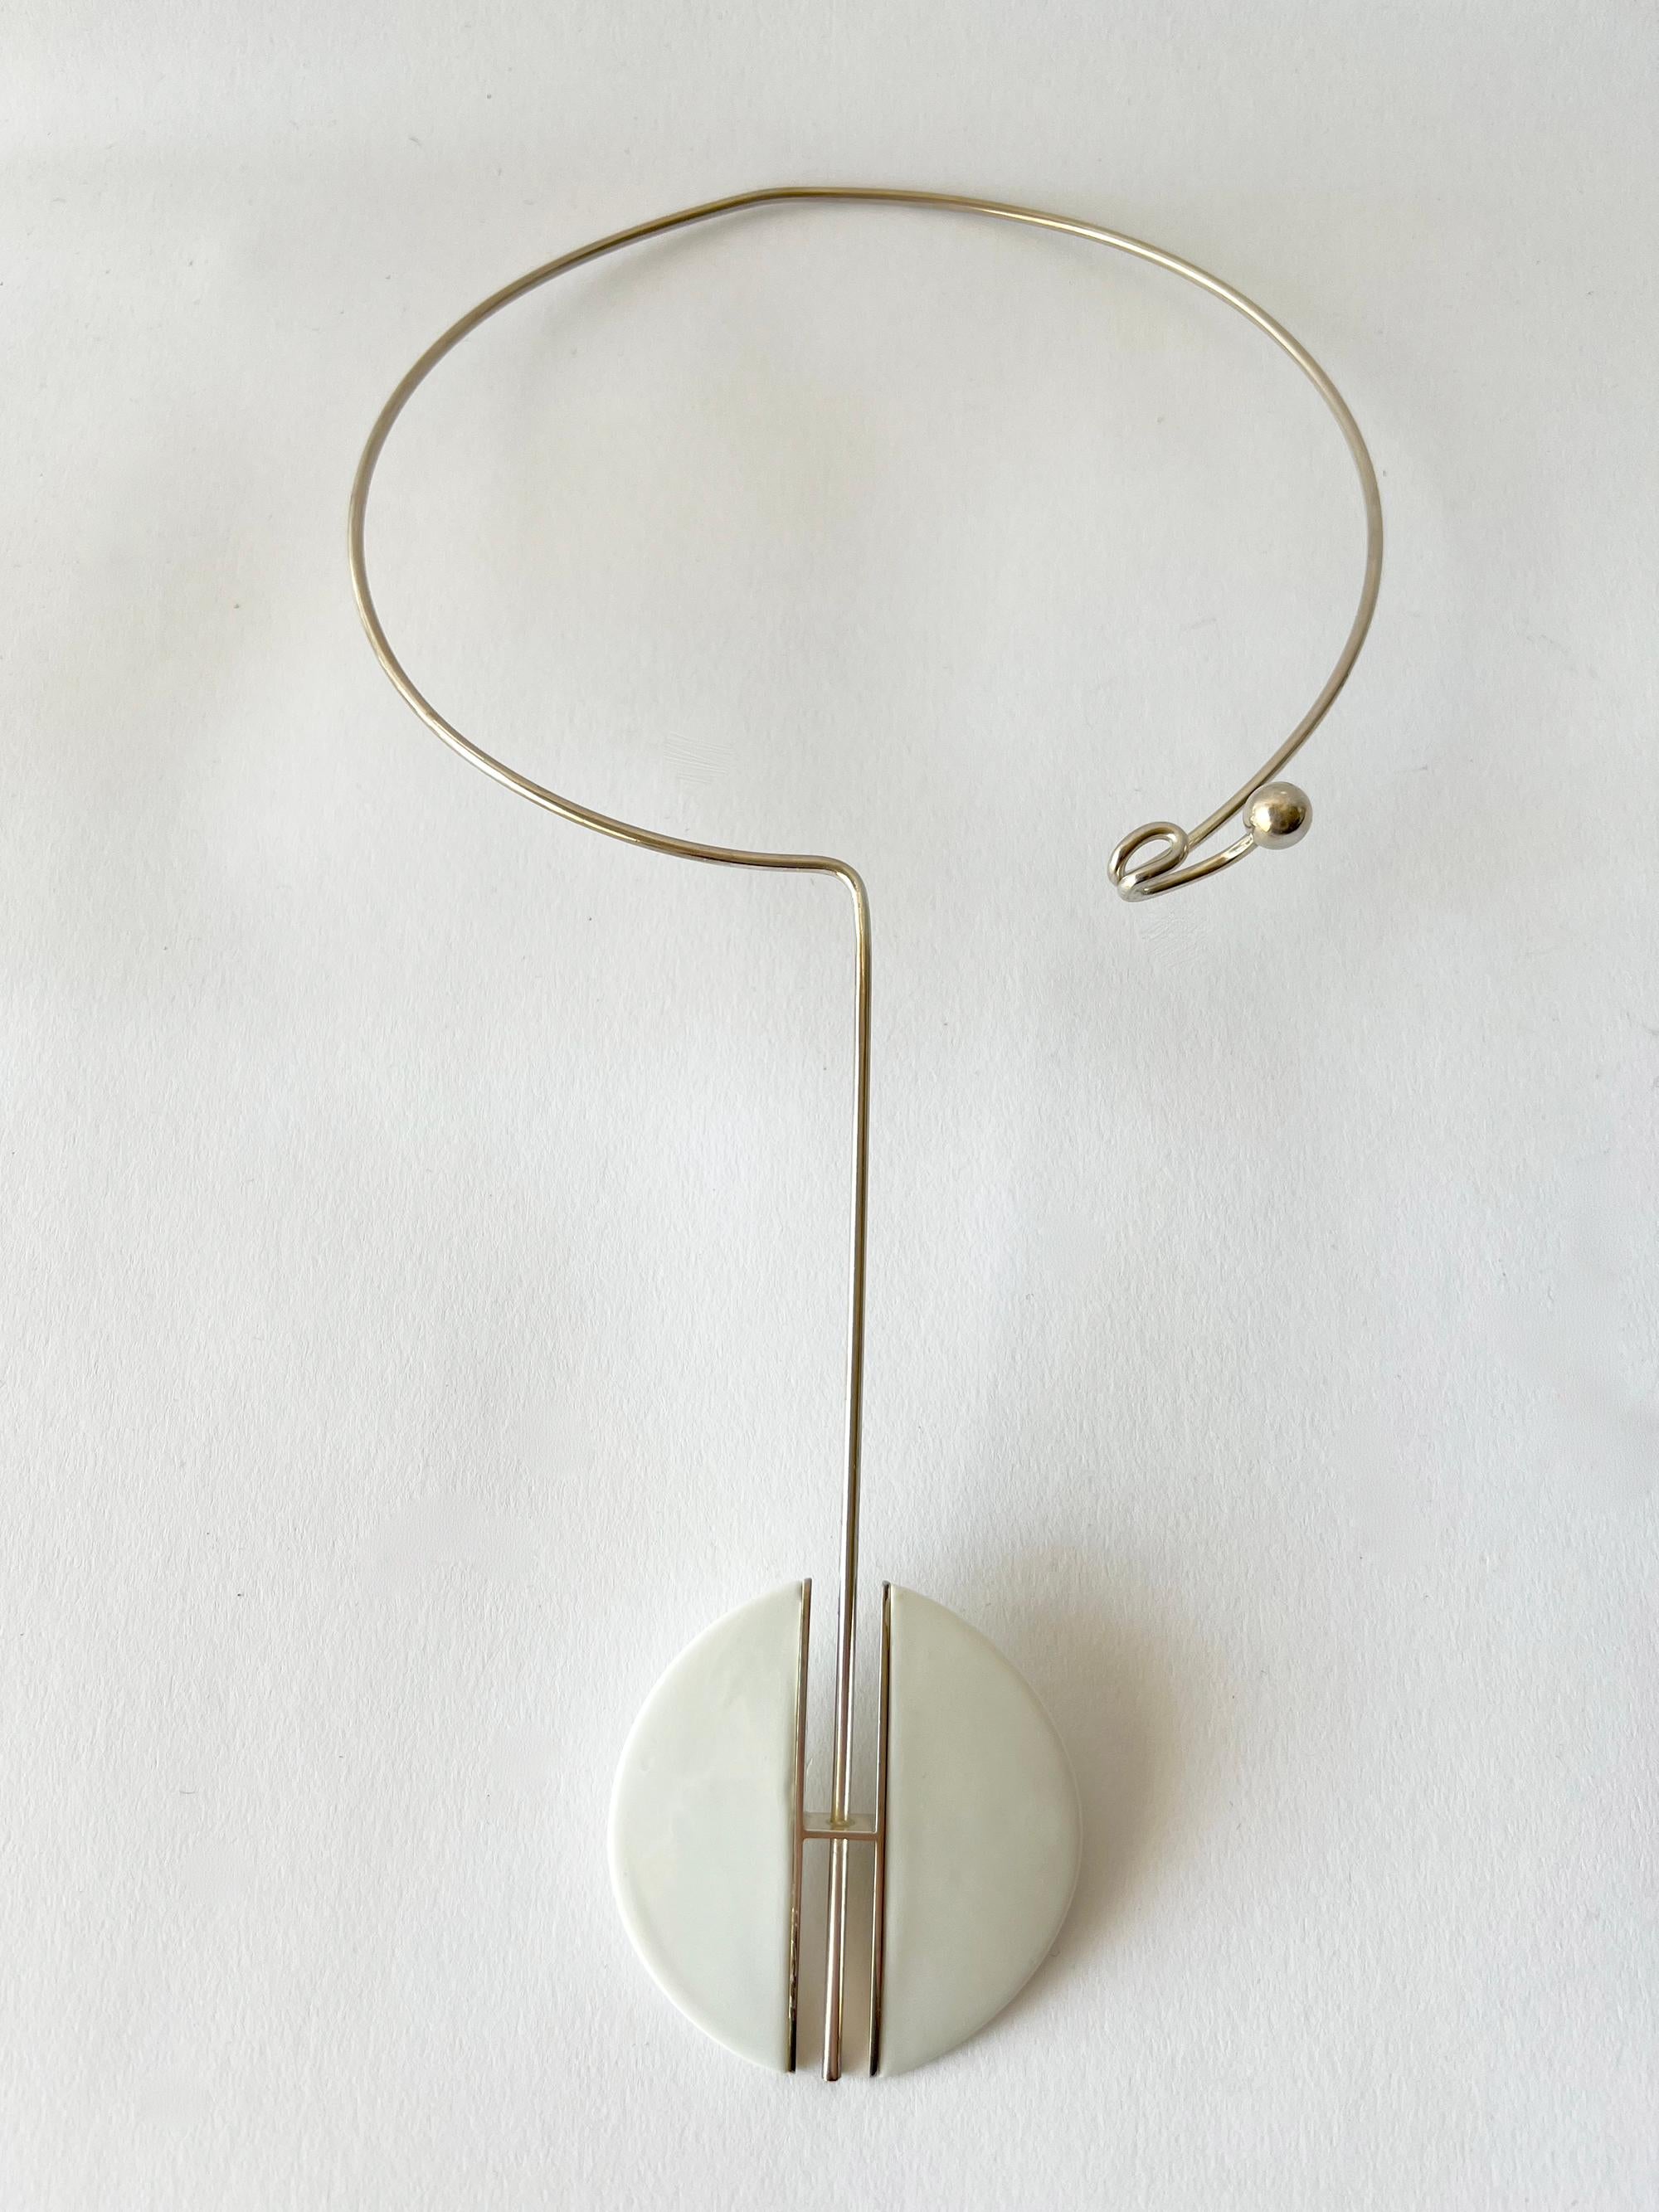 Modernist Anton Michelsen Royal Copenhagen Porcelain Silver Danish Modern Choker Necklace For Sale